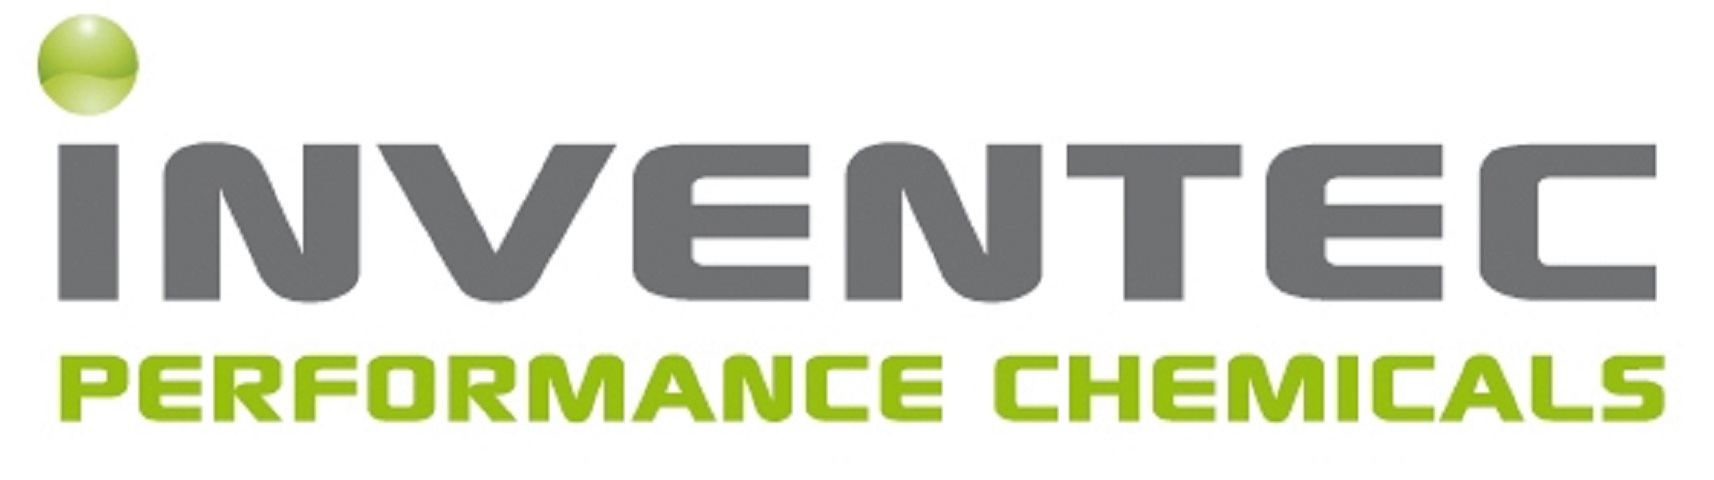 Logo Inventec Performance Chemicals